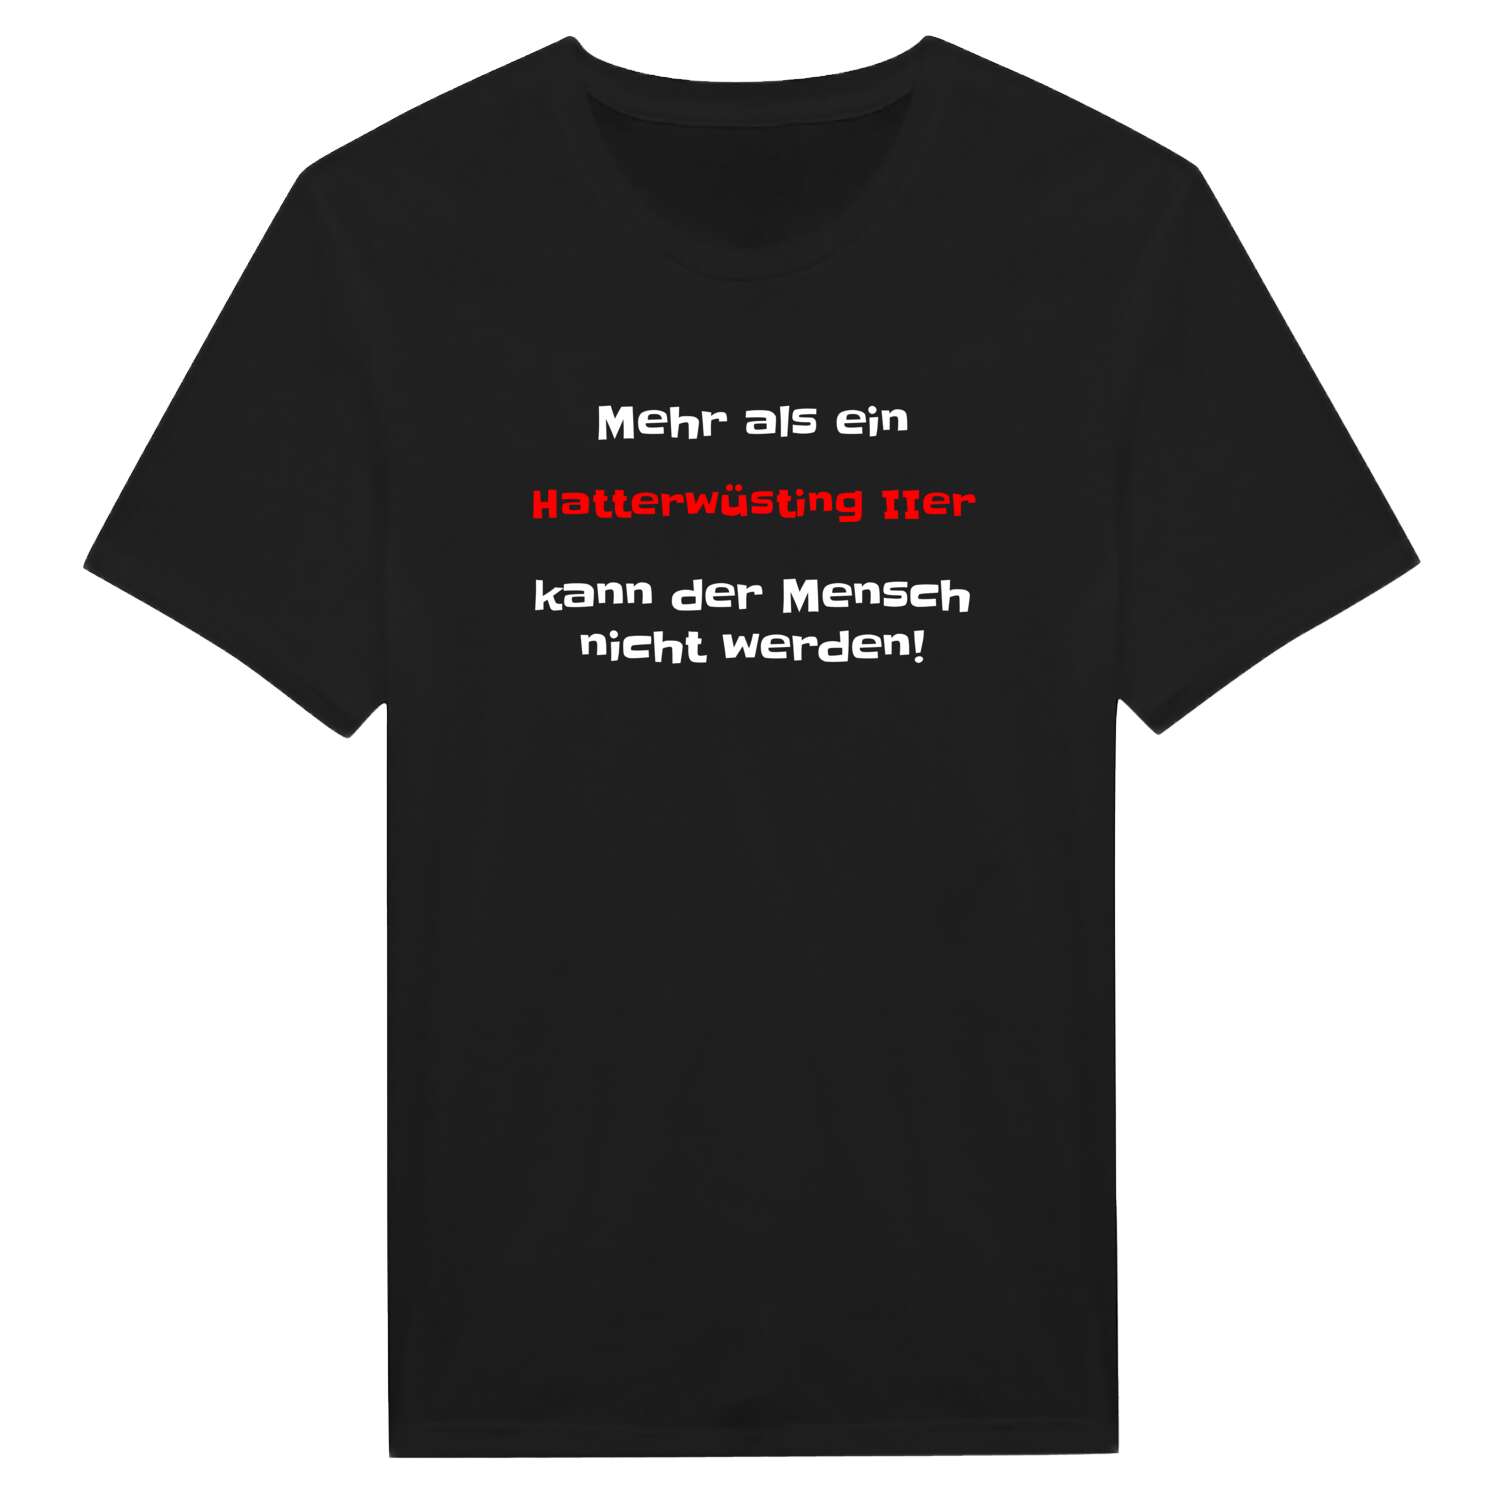 Hatterwüsting II T-Shirt »Mehr als ein«